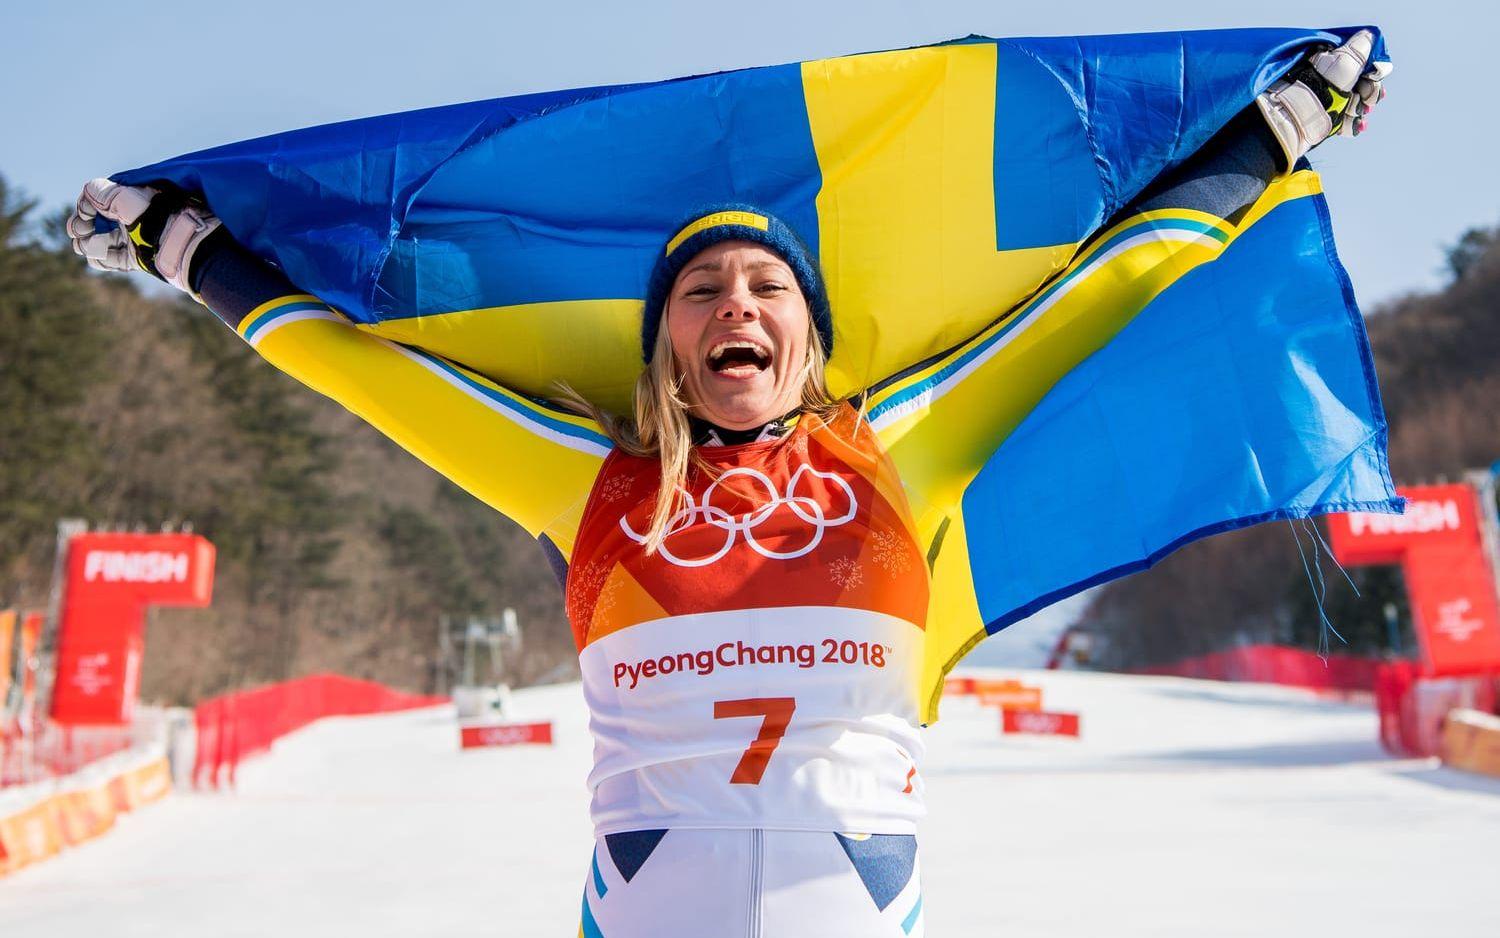 ... Men karriärens största triumf var ändå OS-guldet i Pyeongchang 2018 – efter ett klockrent åk av den då 32-åriga svenskan.